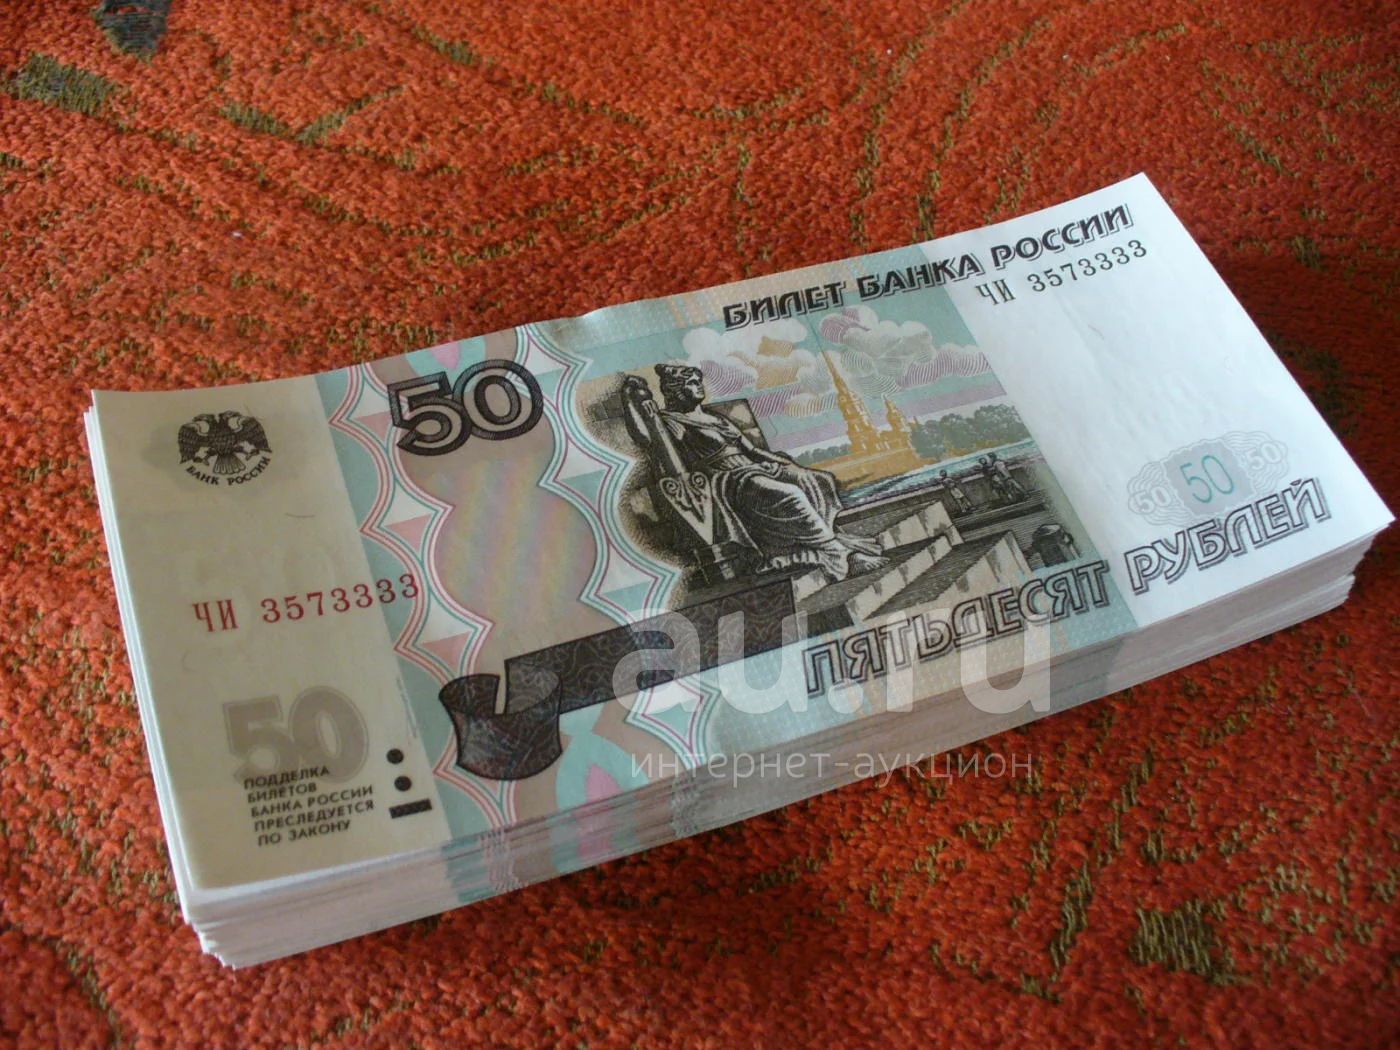 50 рублей 500 рублей. 50 Рублей. 50 Купюр по 1000 рублей. Купюра 50 рублей. Пачка 50 рублей.